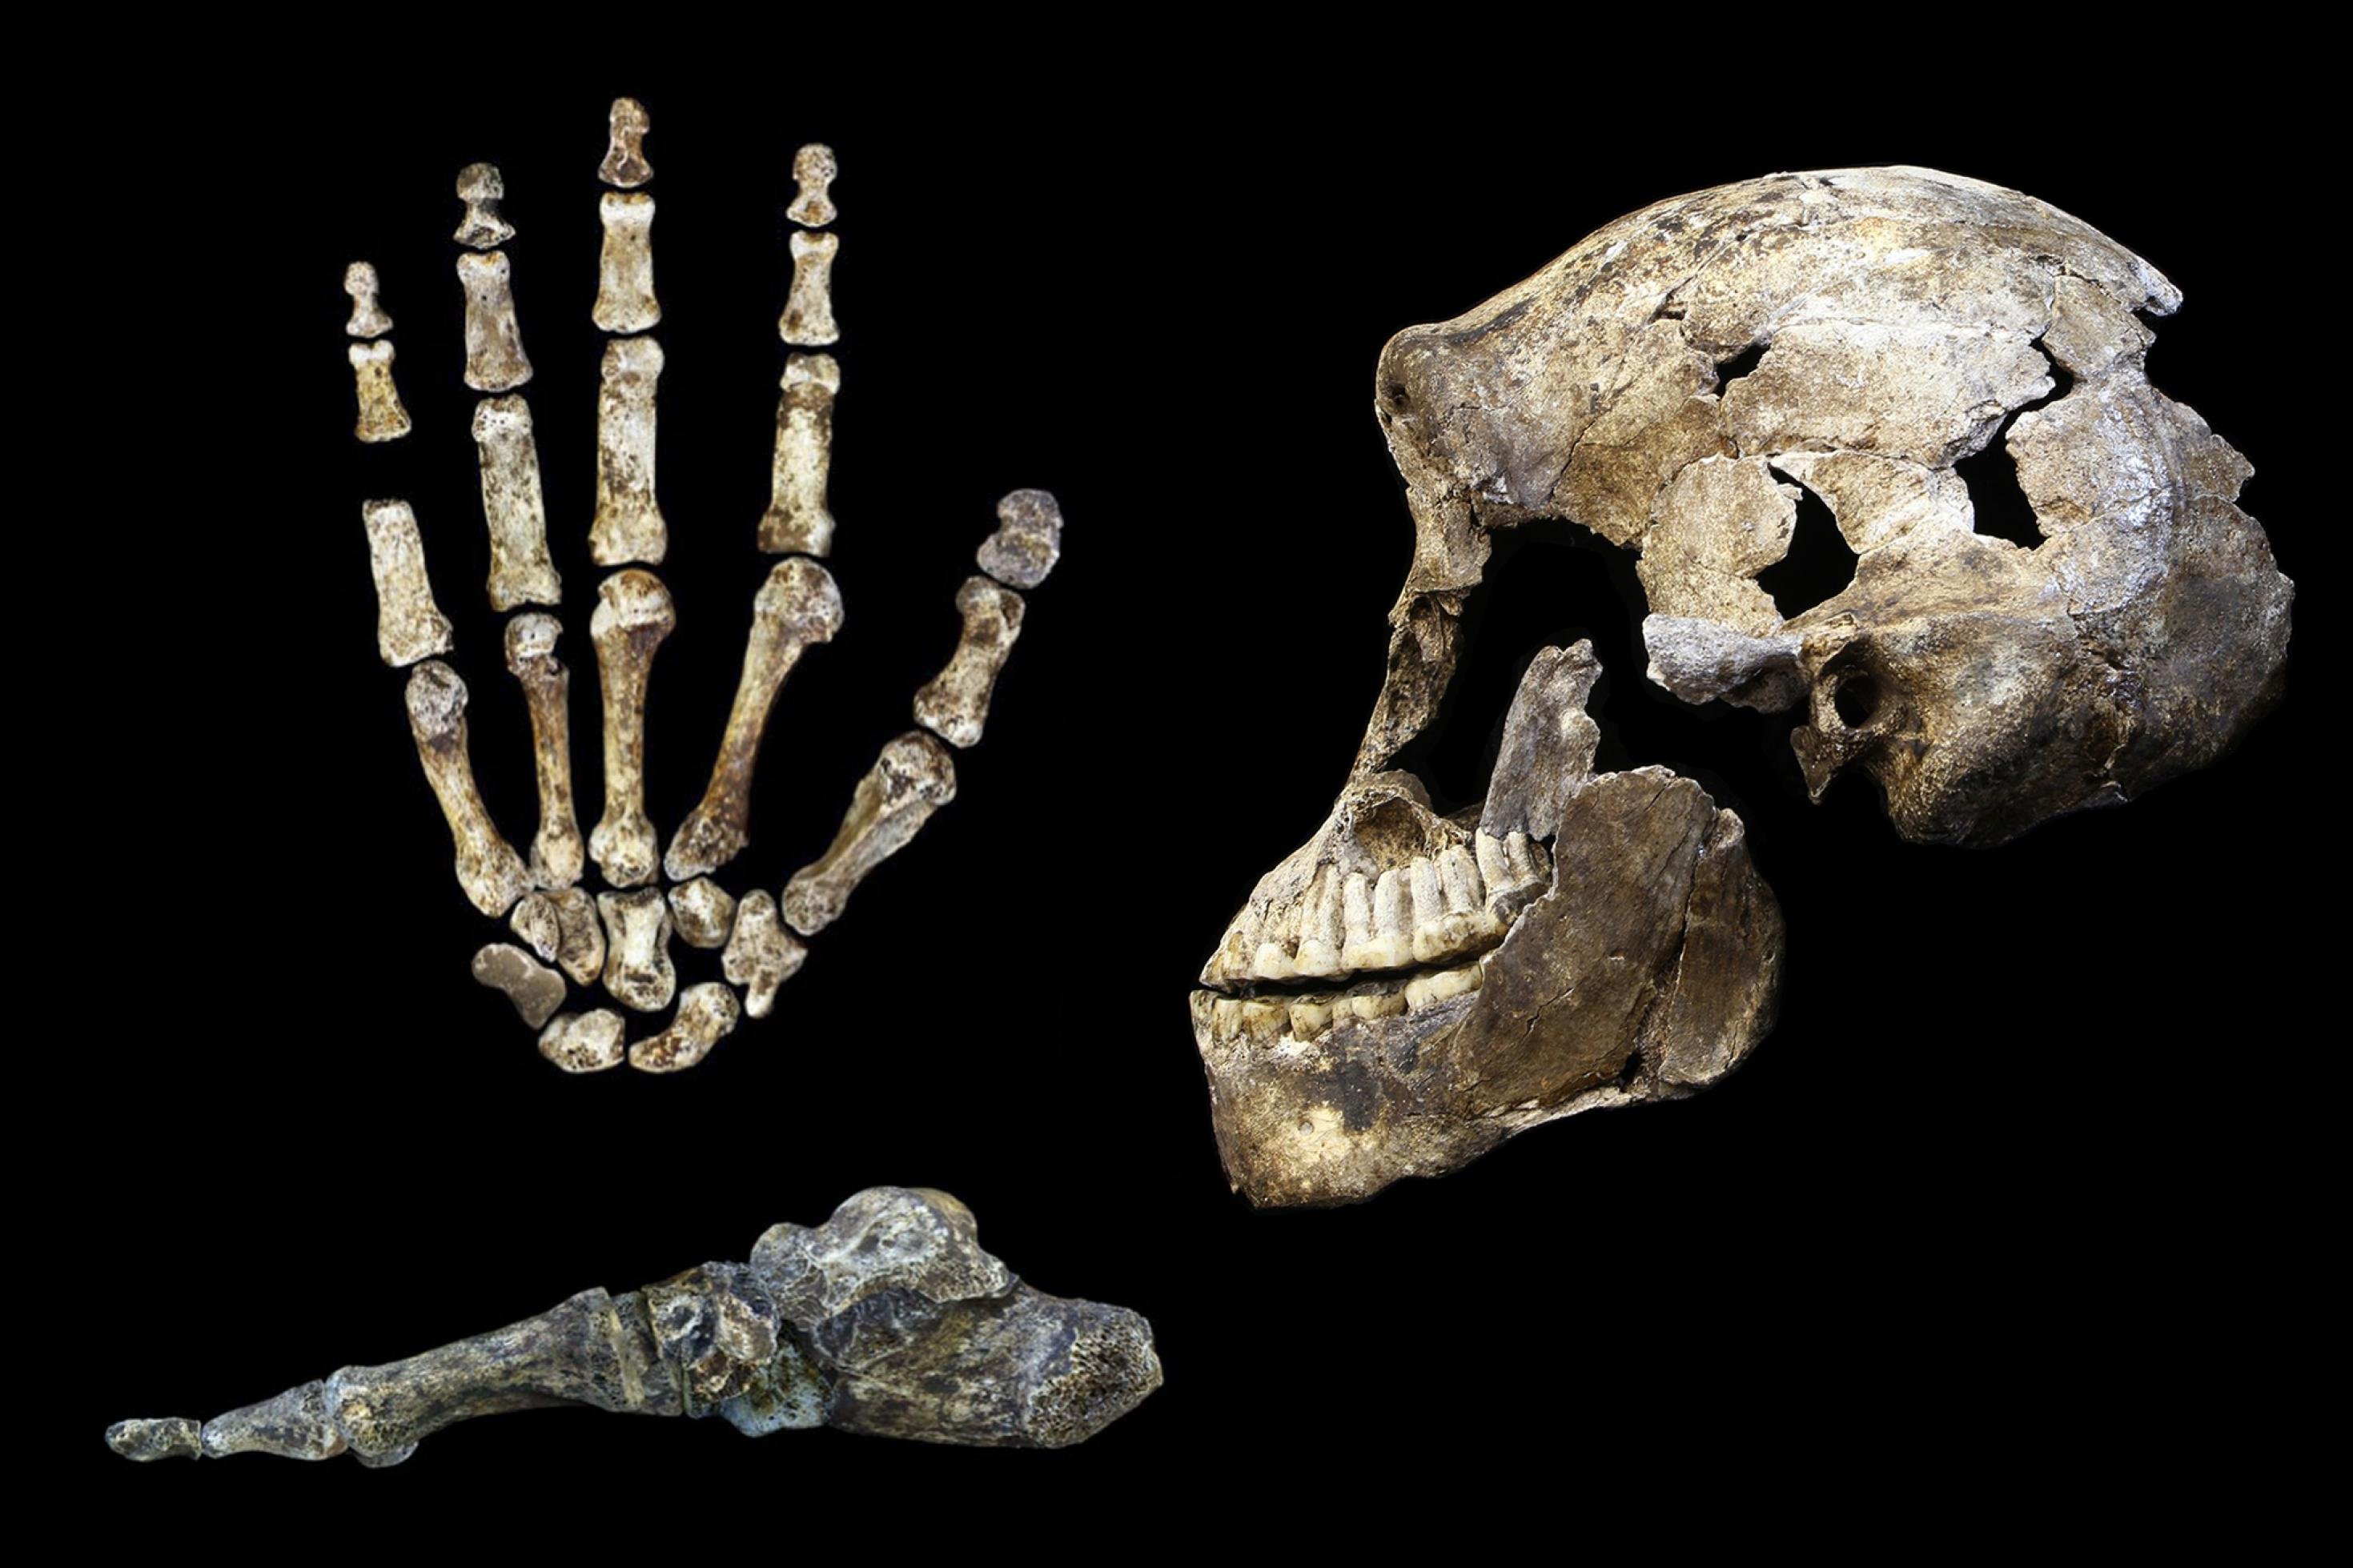 Auf dem Bild sind links die fossilen Knochen einer Hand mit sehr langen Fingern, darunter die Knochen eines menschlich wirkenden Fußes von der Seite zu sehen. Rechts daneben der seitlich gezeigte Schädel eines Urmenschen, der dicke Überaugenwülste, vorstehende Kiefer und einen nur kleinen Gehirnschädel hat.